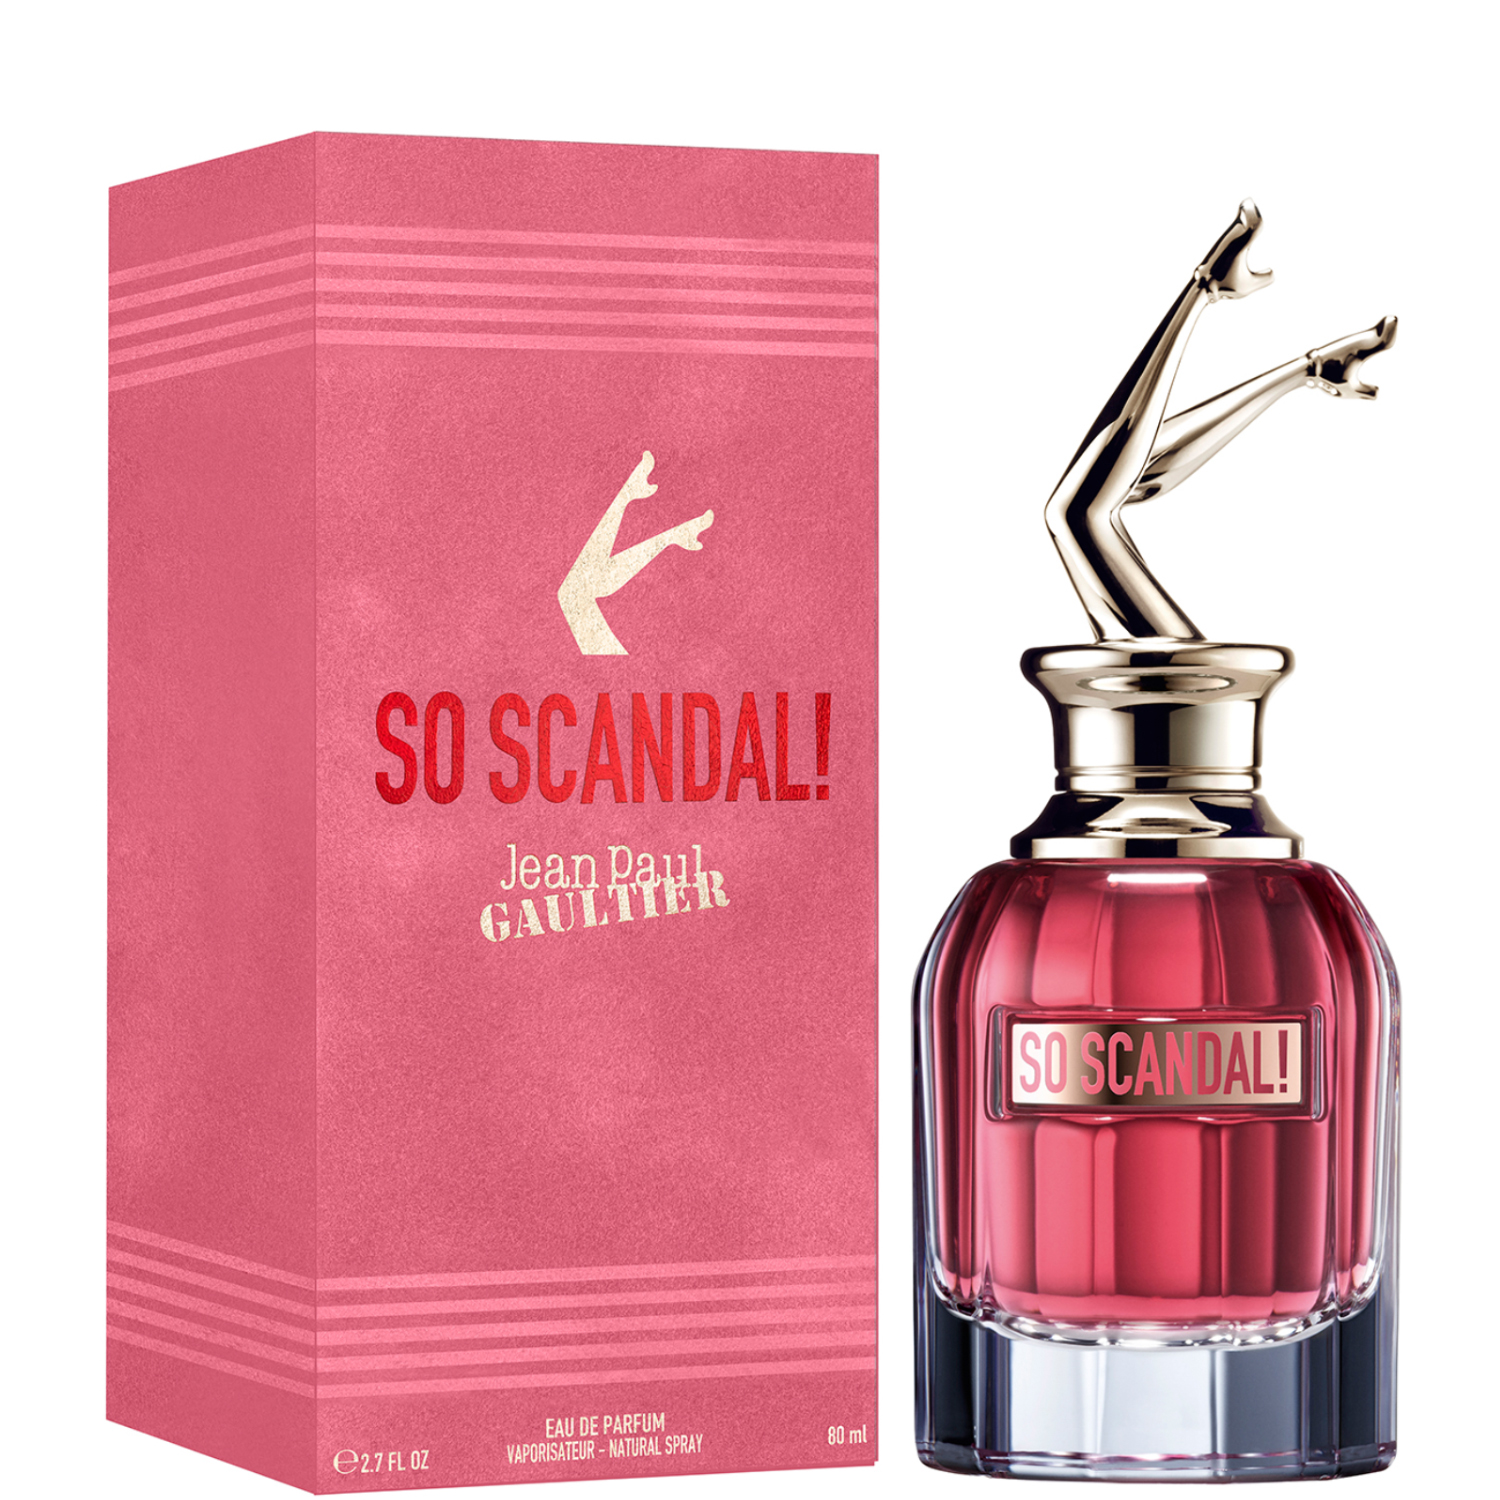 Jean Paul Gaultier So Scandal! Eau de Parfum 80ml